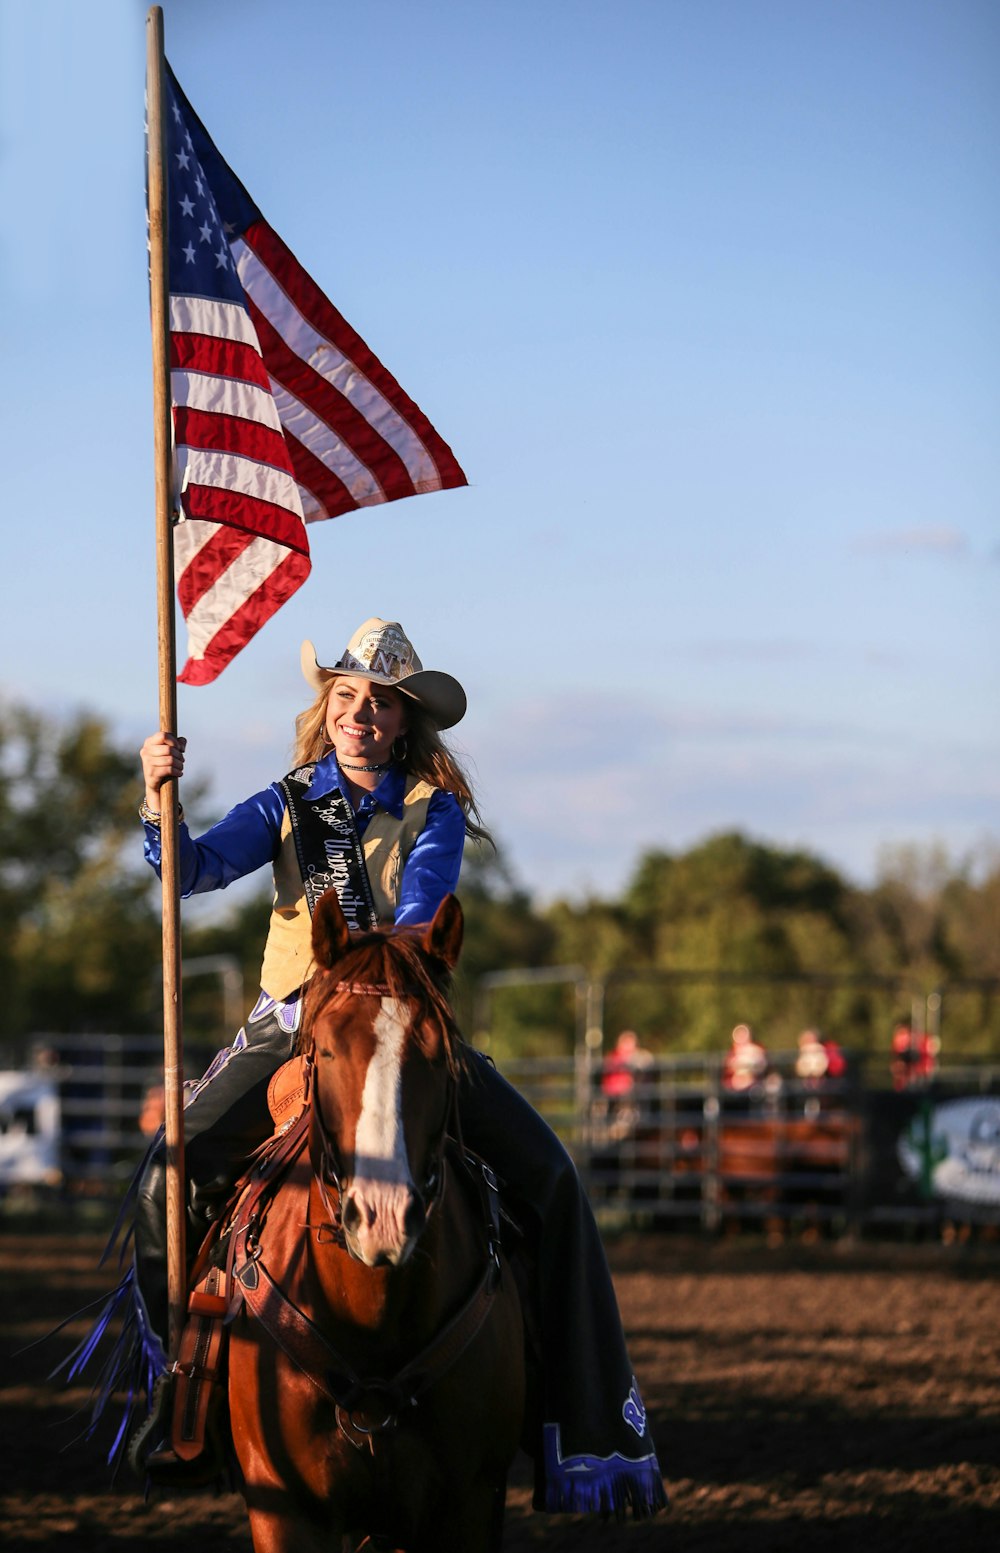 Eine Frau, die auf dem Rücken eines braunen Pferdes reitet und eine Flagge hält